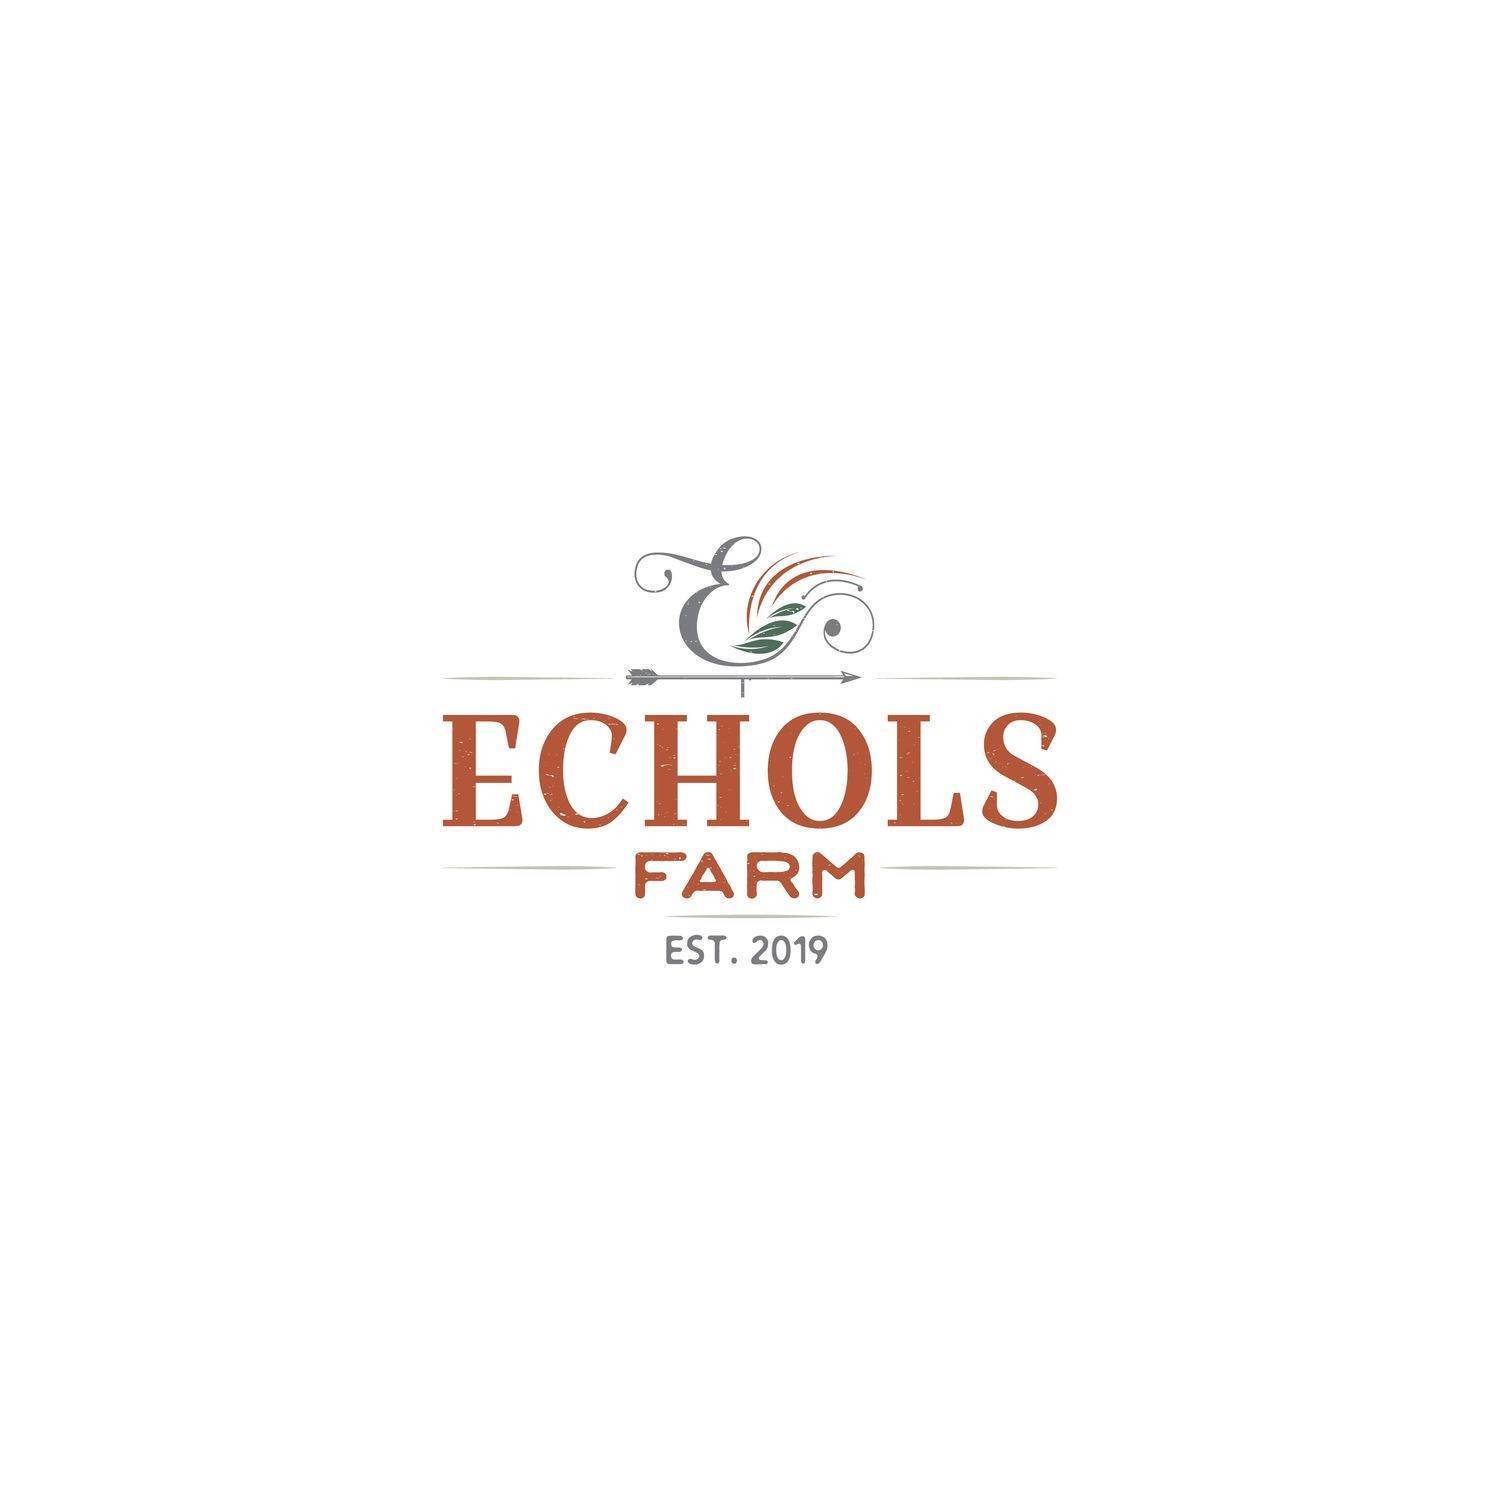 6. Echols Farm edificio en 4511 Macland Road, Hiram, GA 30141